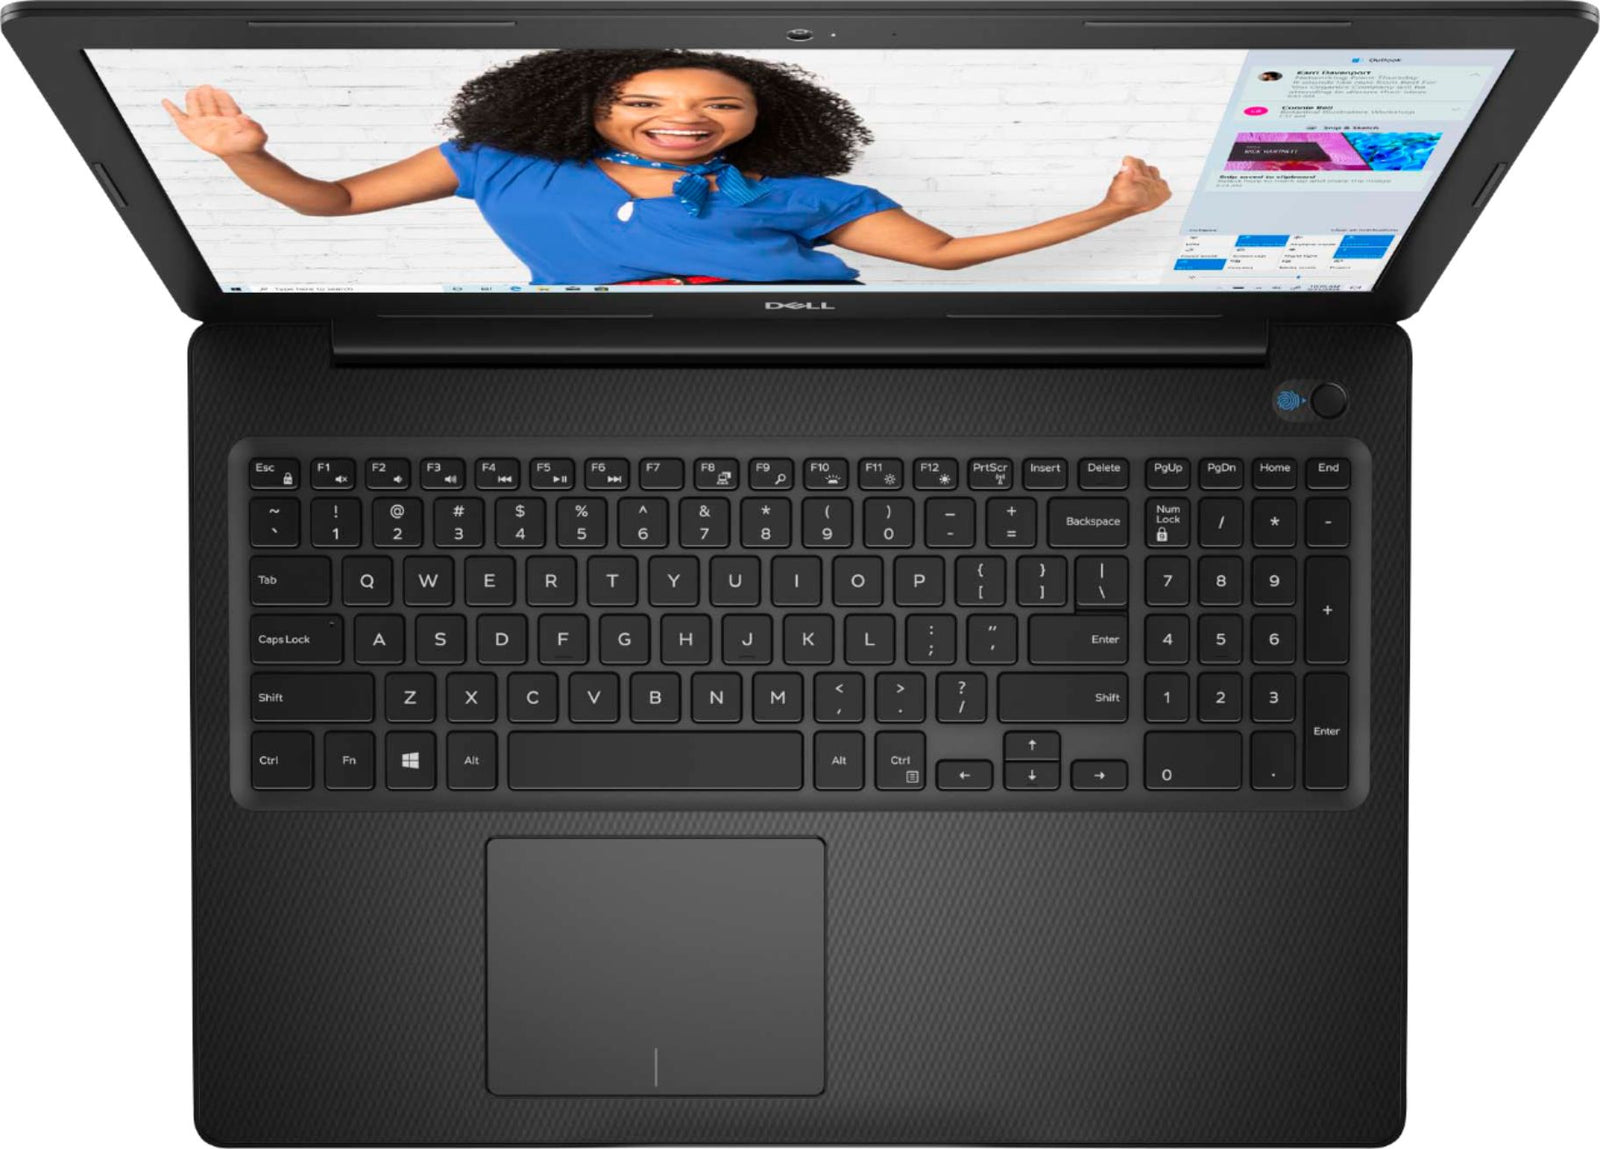 Dell Inspiron 15 3000 156 Touch Screen Laptop Intel Core I3 8gb Memo